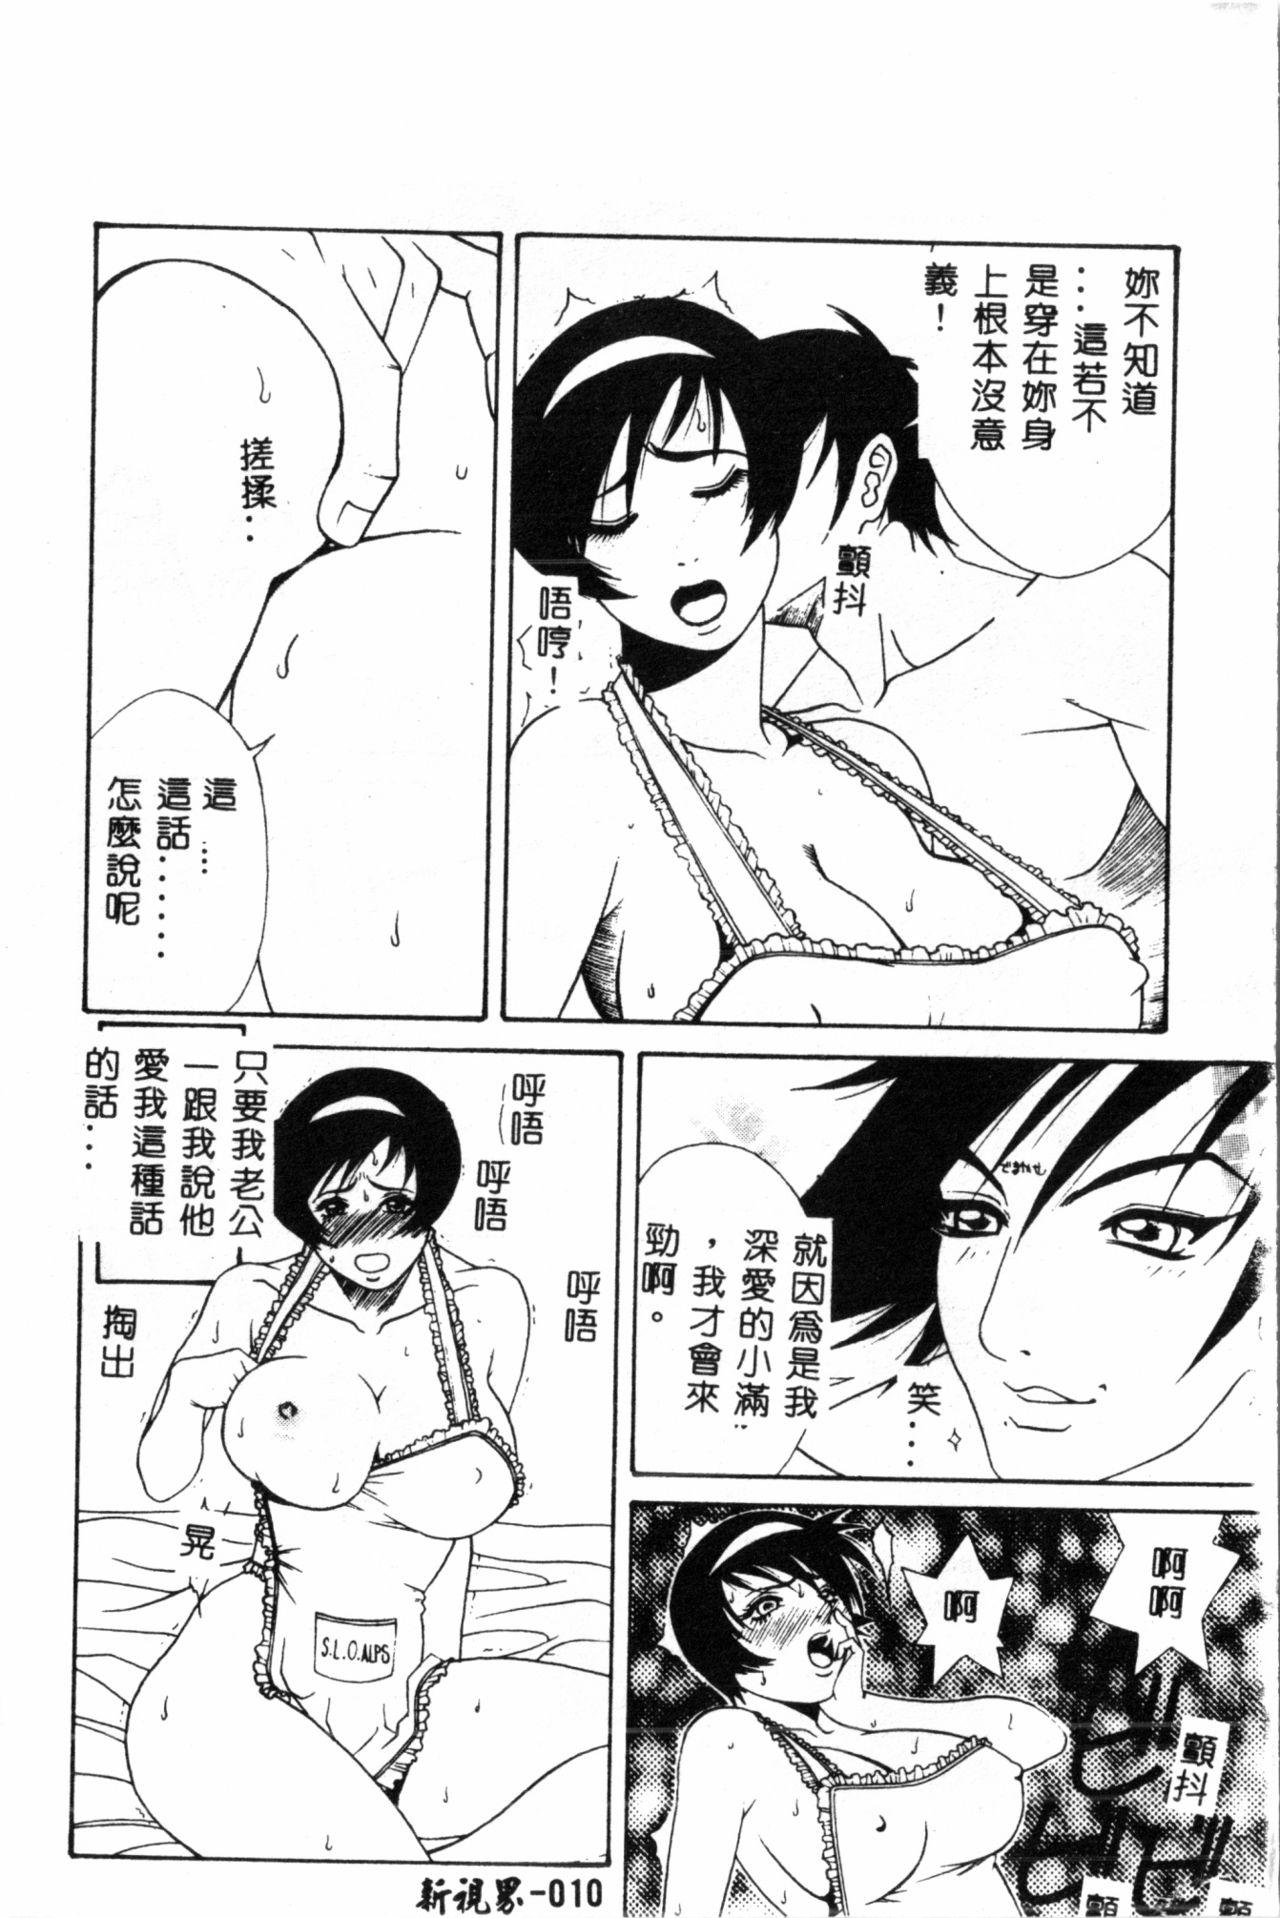 Passivo Abunai Michiru-san Sucking Dicks - Page 10